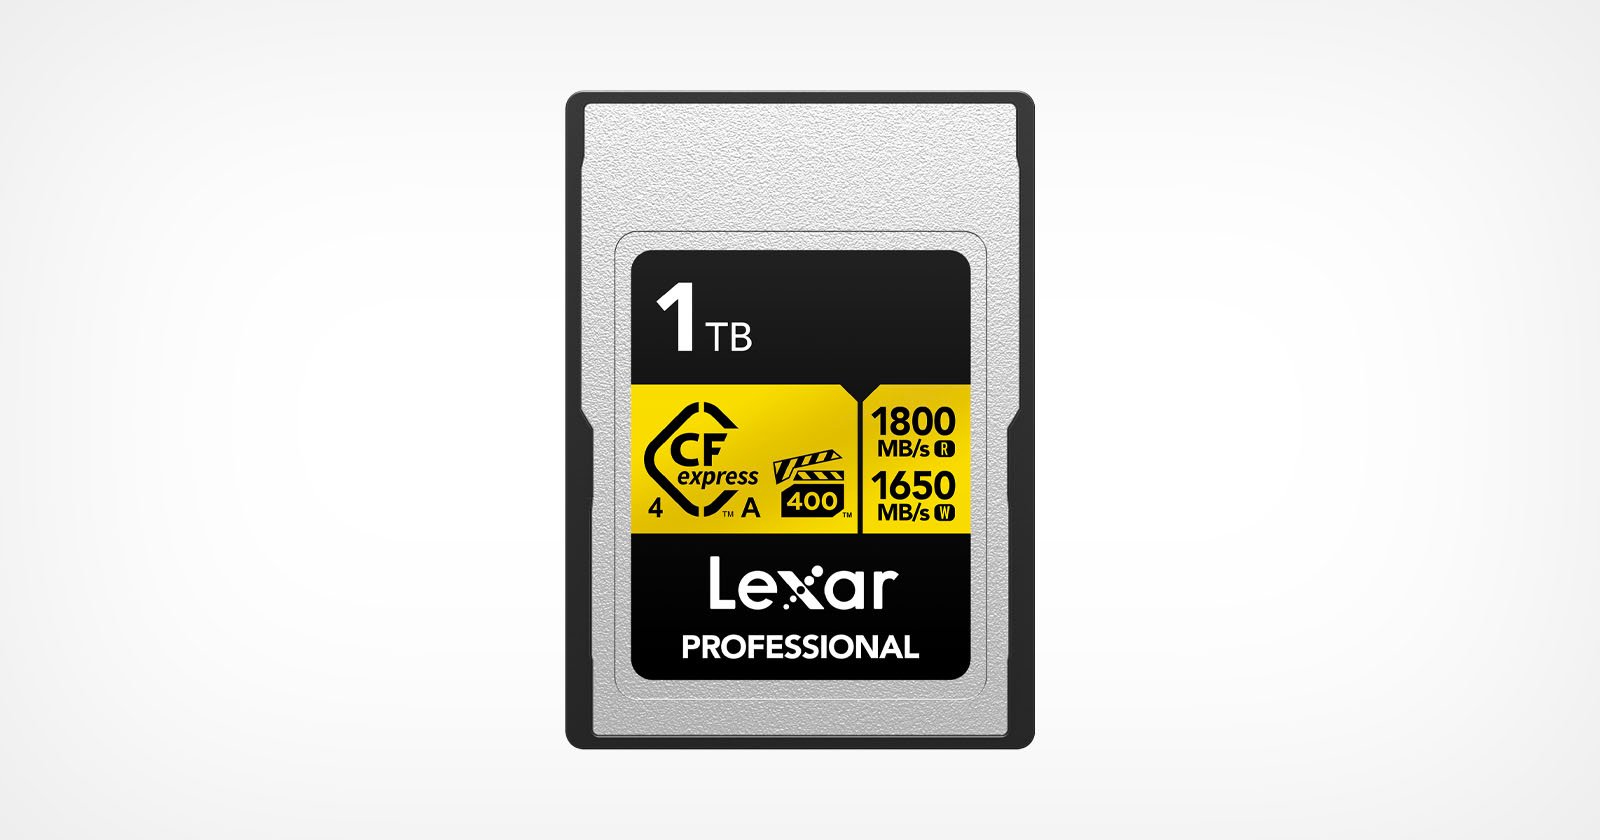  lexar first release next-gen cfe card 